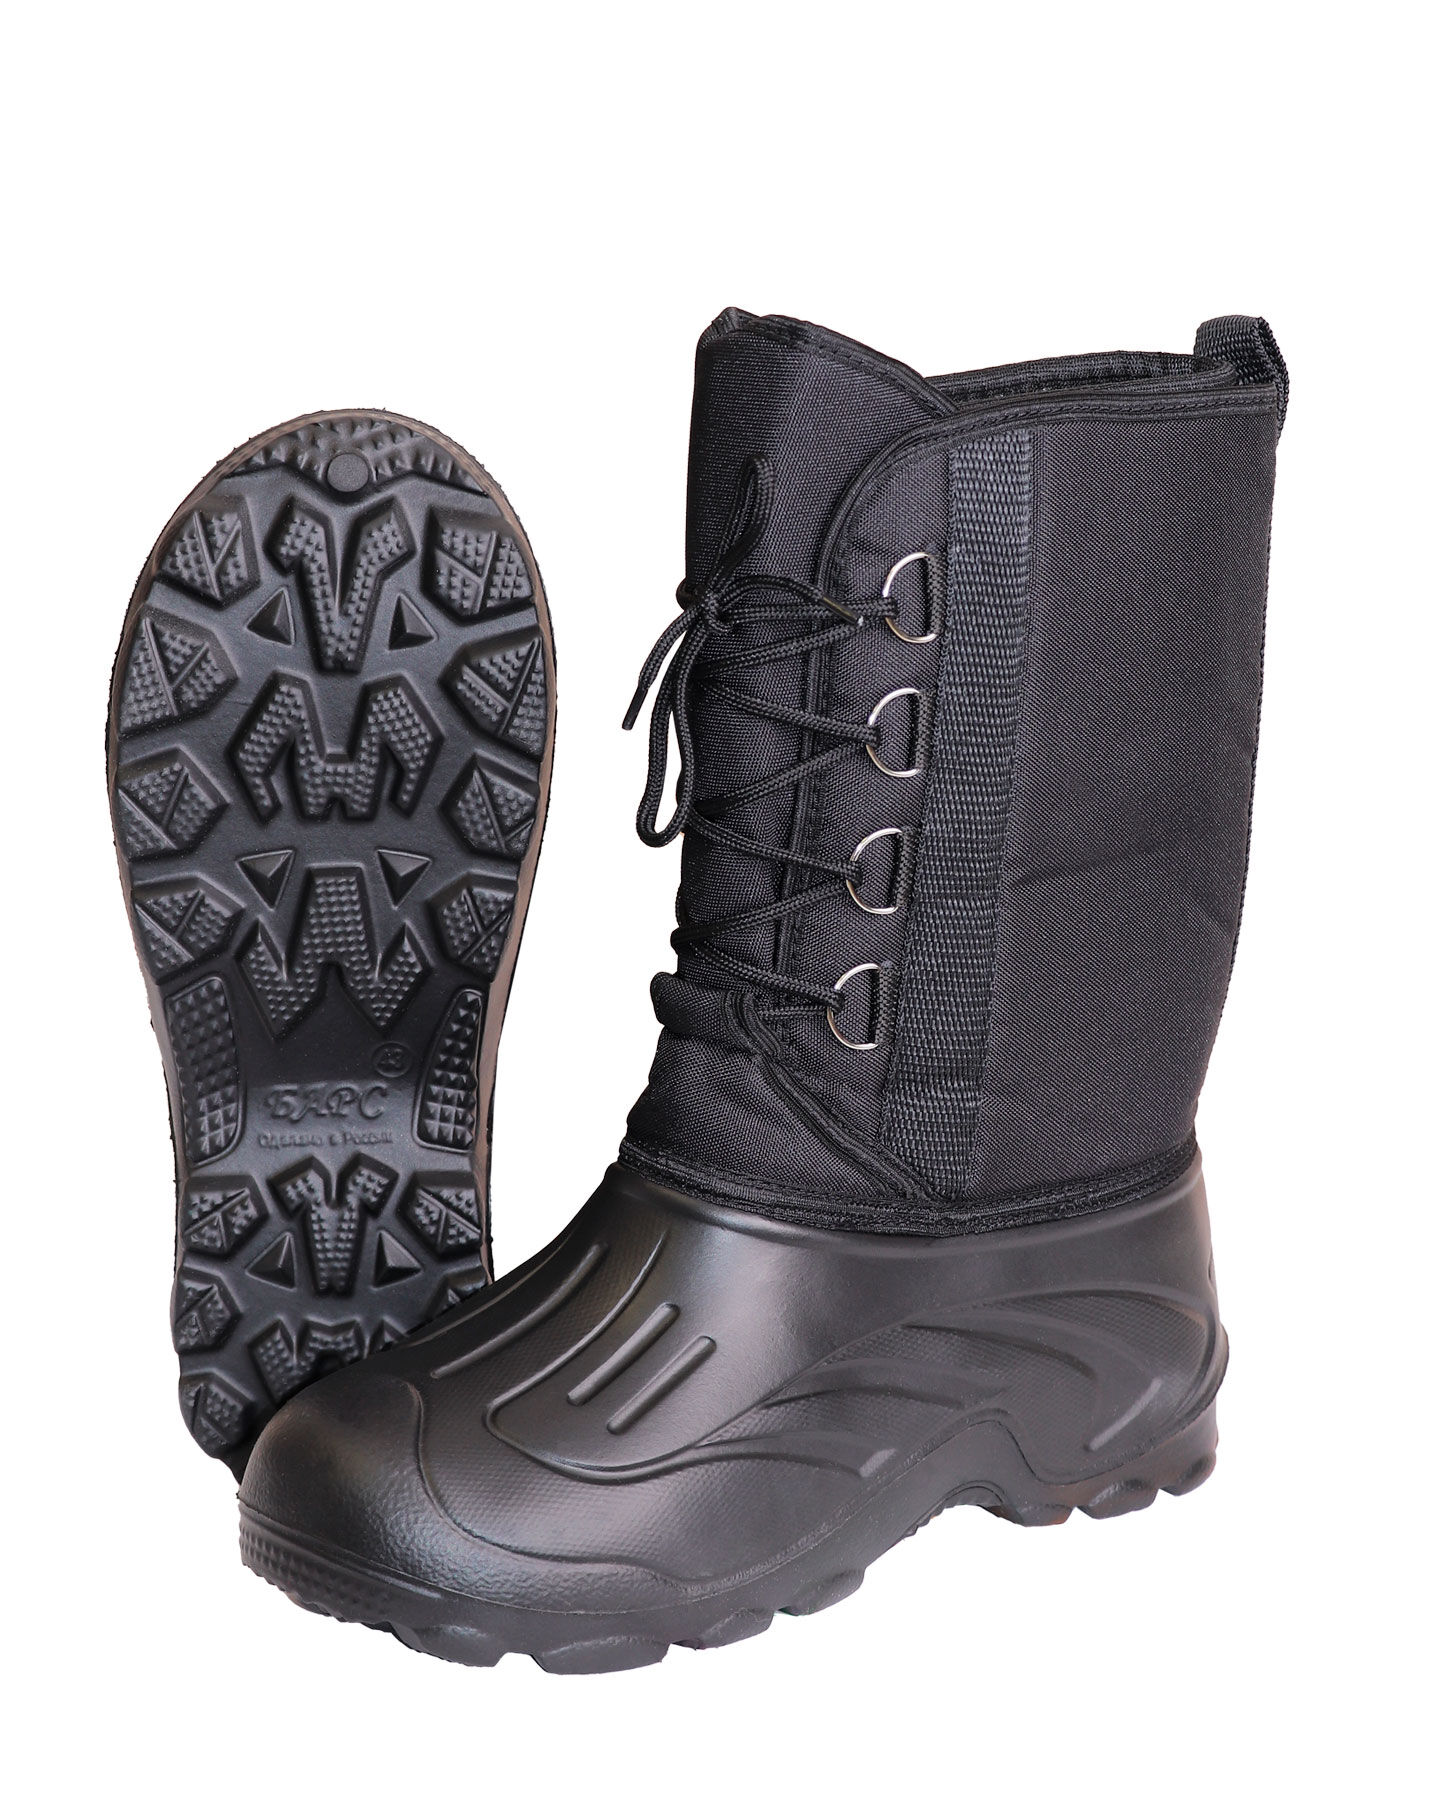 Дутики ЭВА мужские (Д-014 ч) на шнуровке с чулком (-40С), цвет черный